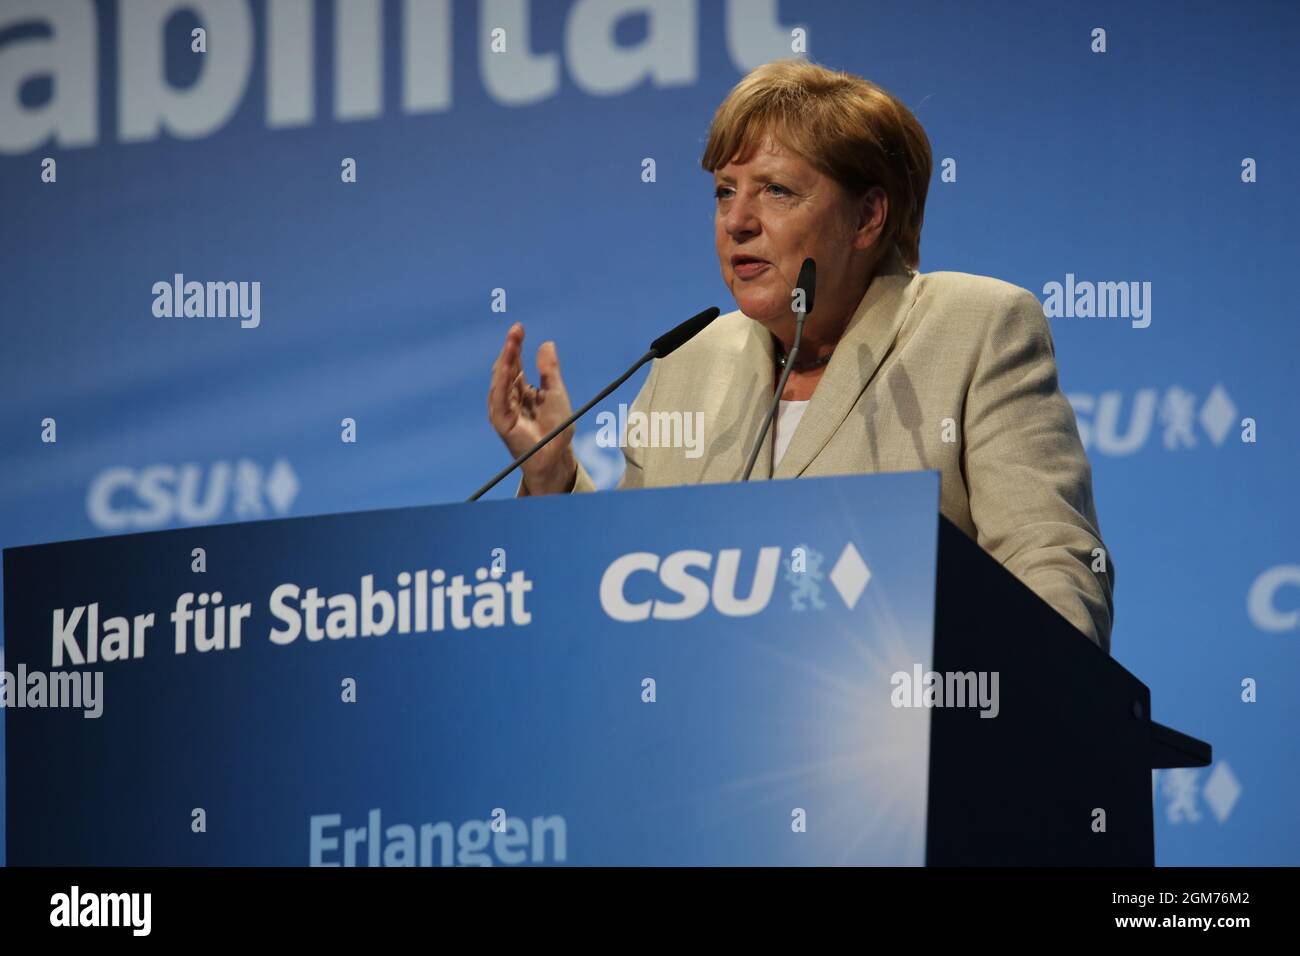 Angela Merkel habló en un mitin electoral en Erlangen Alemania durante la campaña para las elecciones generales de 2017. Foto de stock